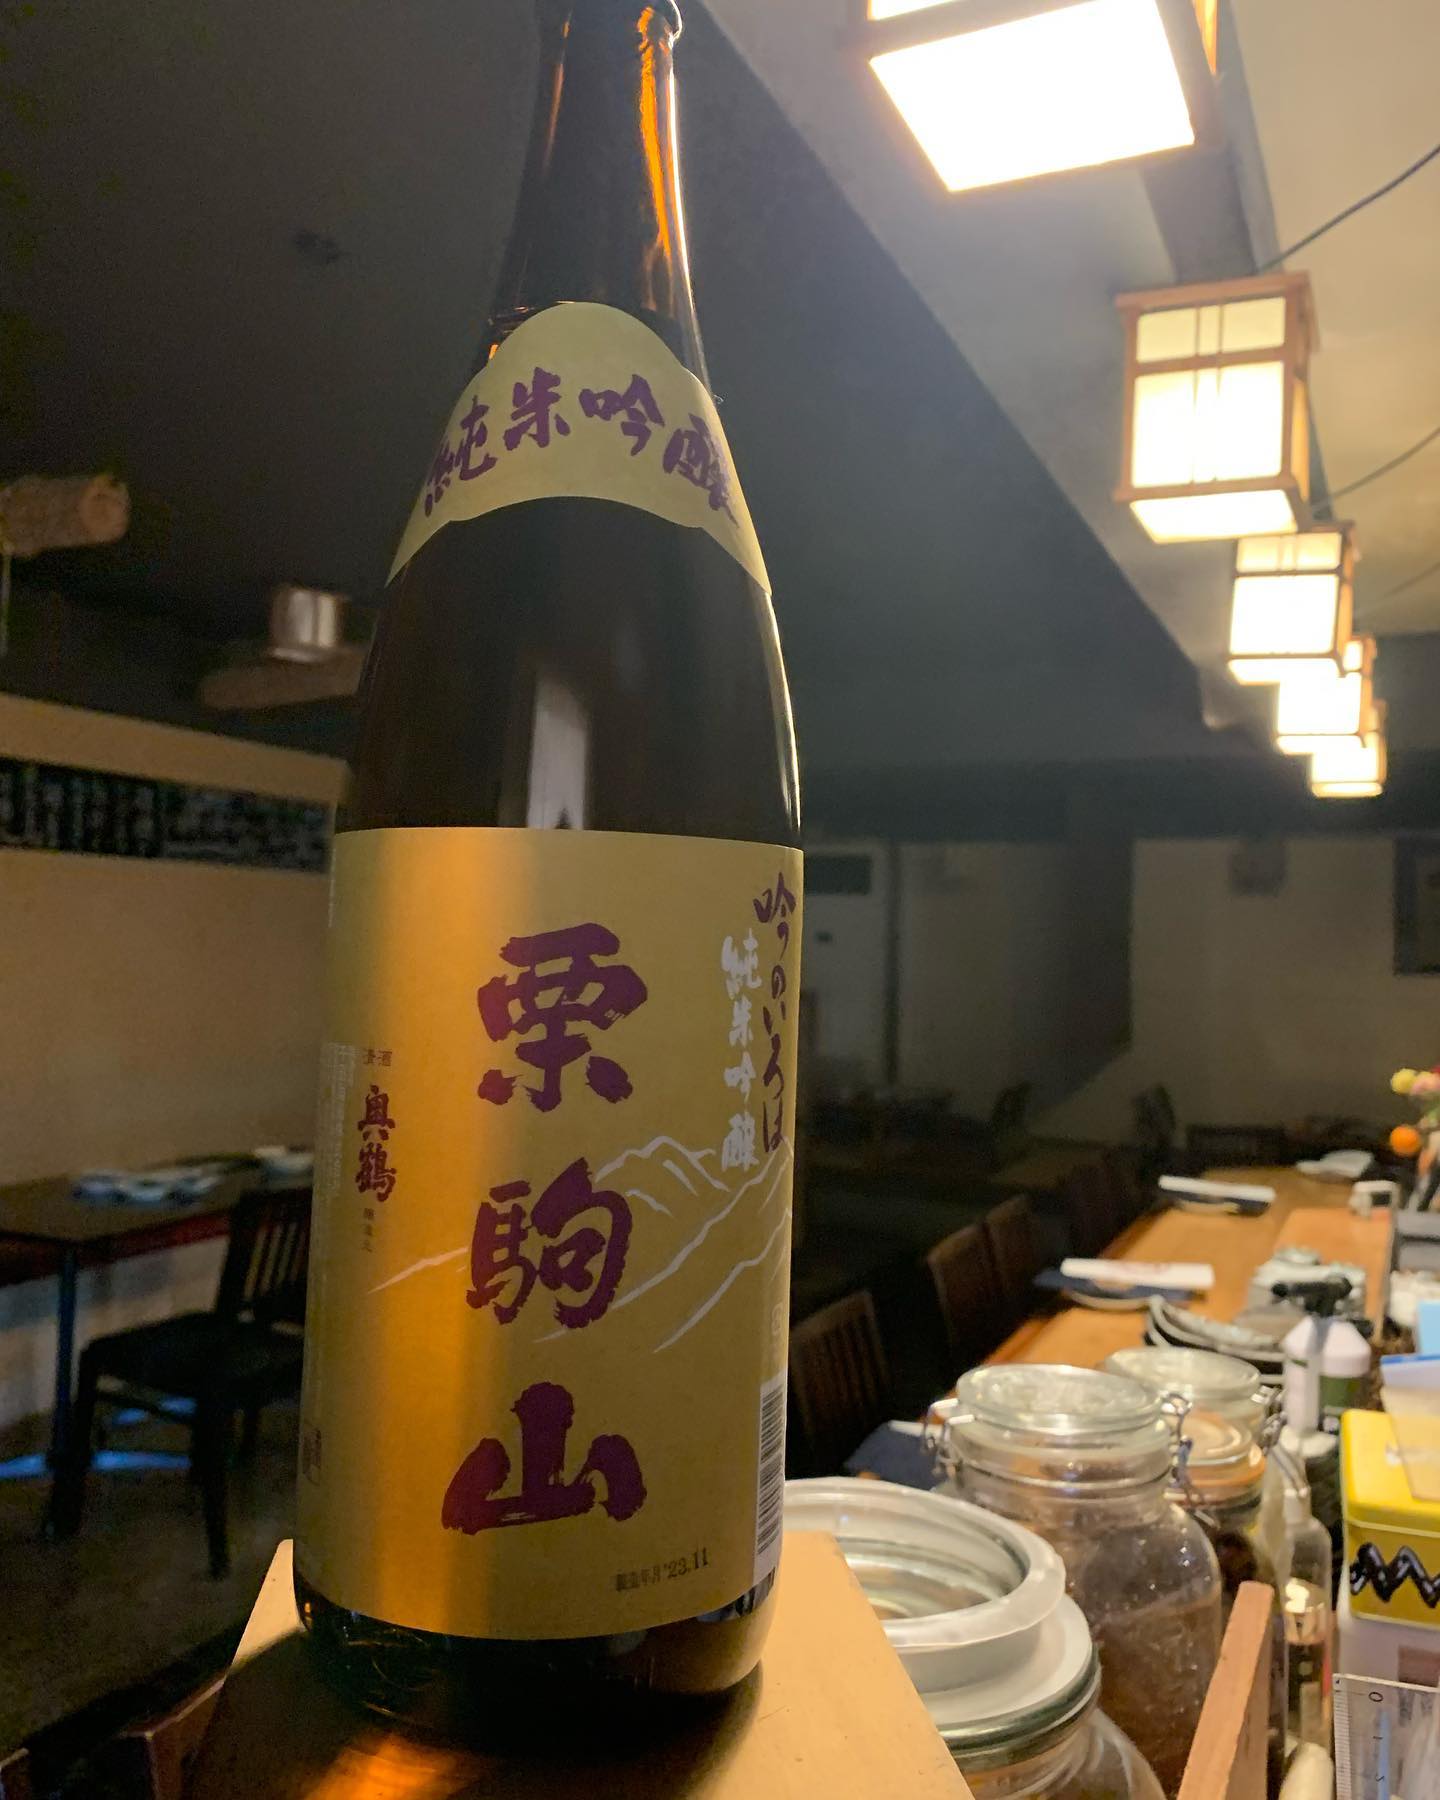 本日の日本酒紹介
「栗駒山」

宮城県が開発した酒米「吟のいろは」
というお米を使って醸した純米吟醸酒。
ほんのり上品な香りがして、
味わいのある柔らかなお酒です。
 #